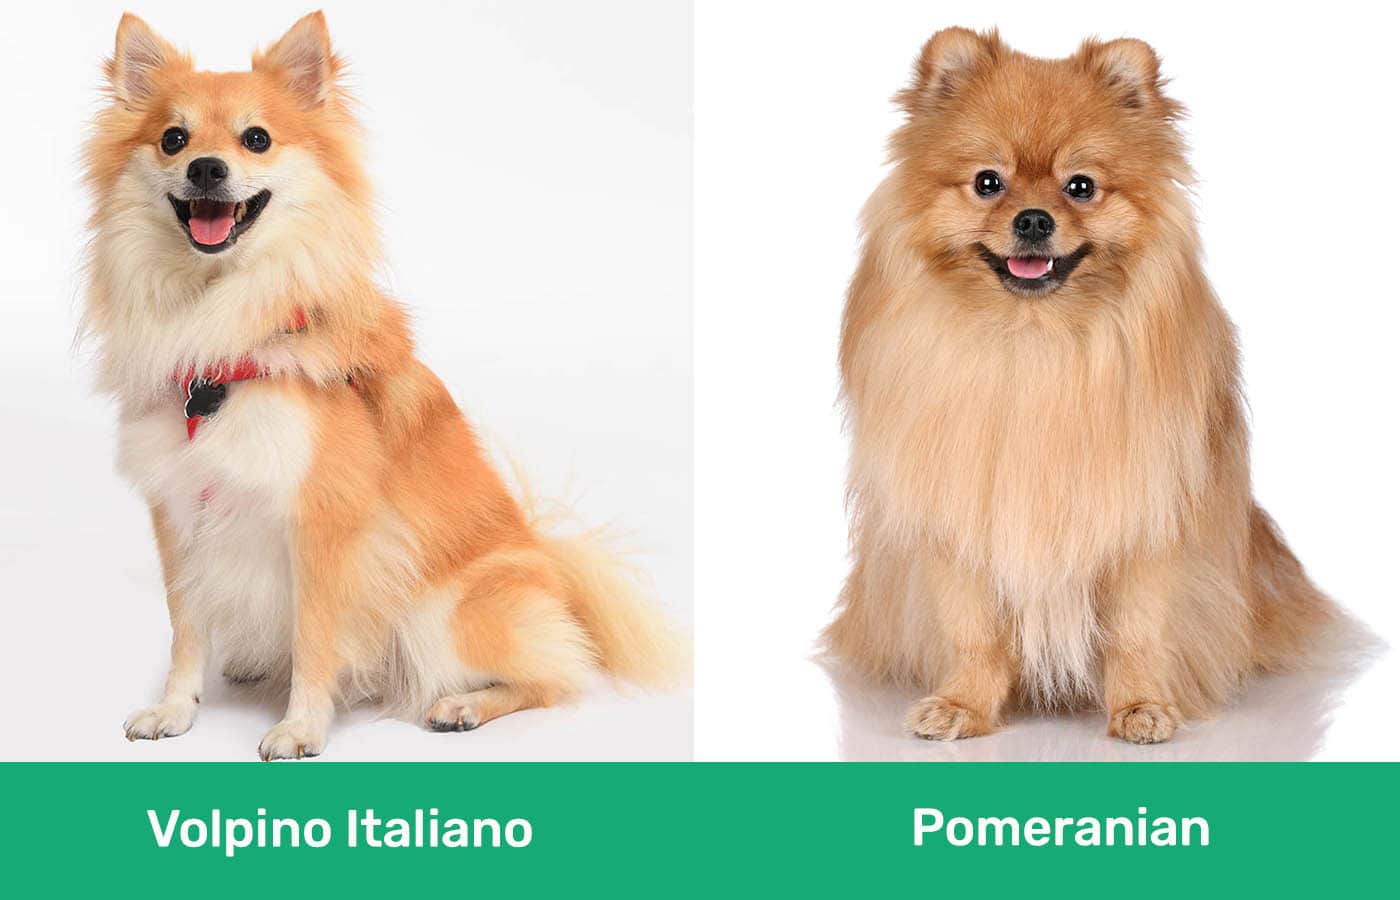 Volpino Italiano vs Pomeranian side by side